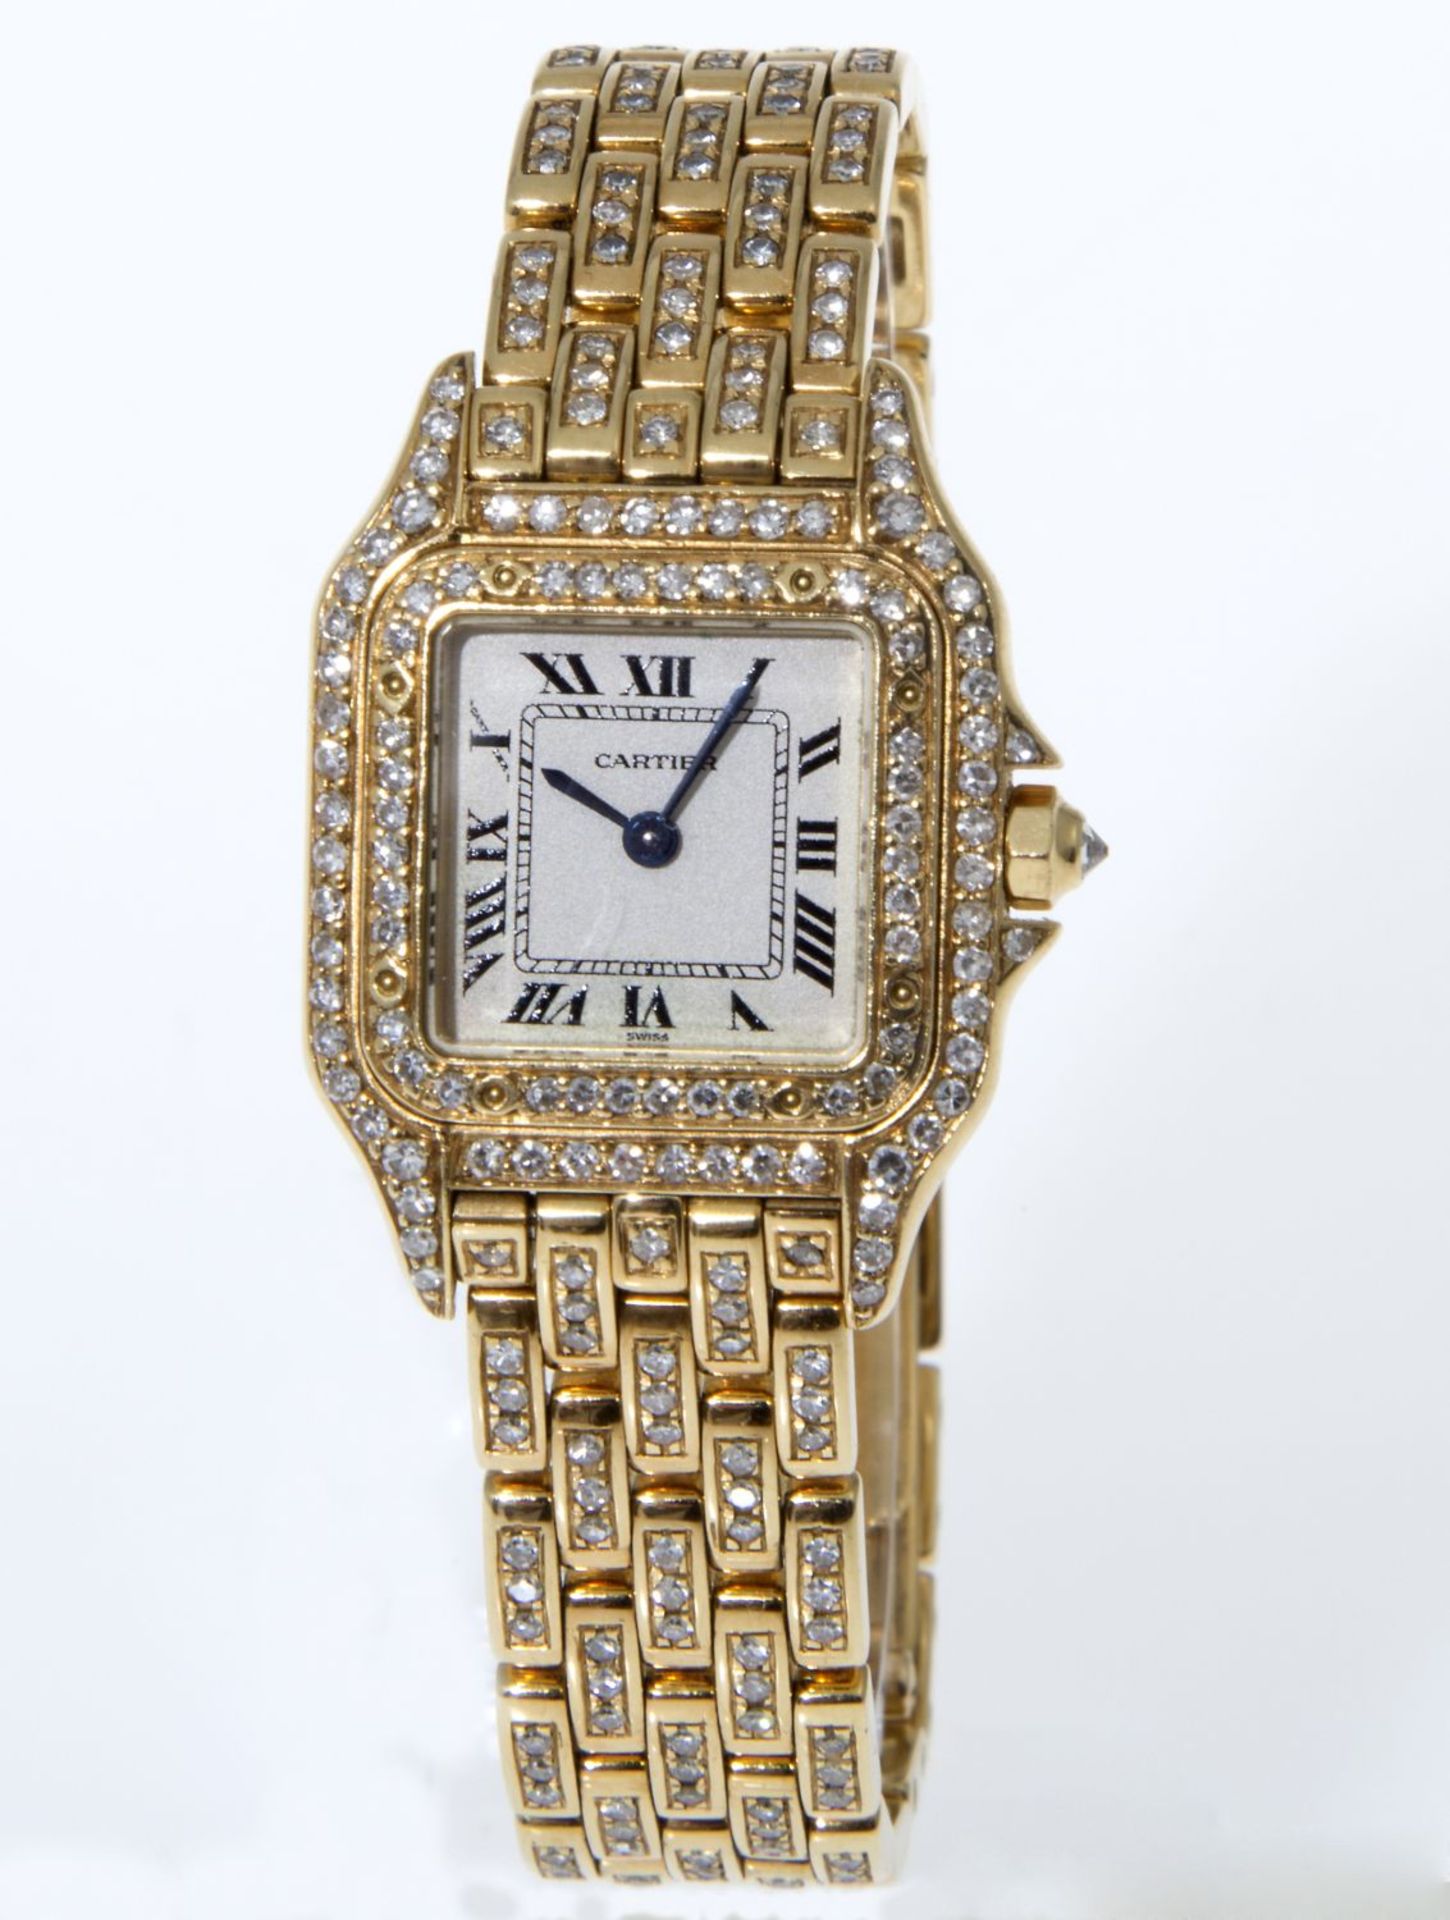 Cartier-Damenarmbanduhr "Panthère" mit reichem Diamant-BesatzGehäuse und Armband aus Gelbgold 750. - Bild 2 aus 3